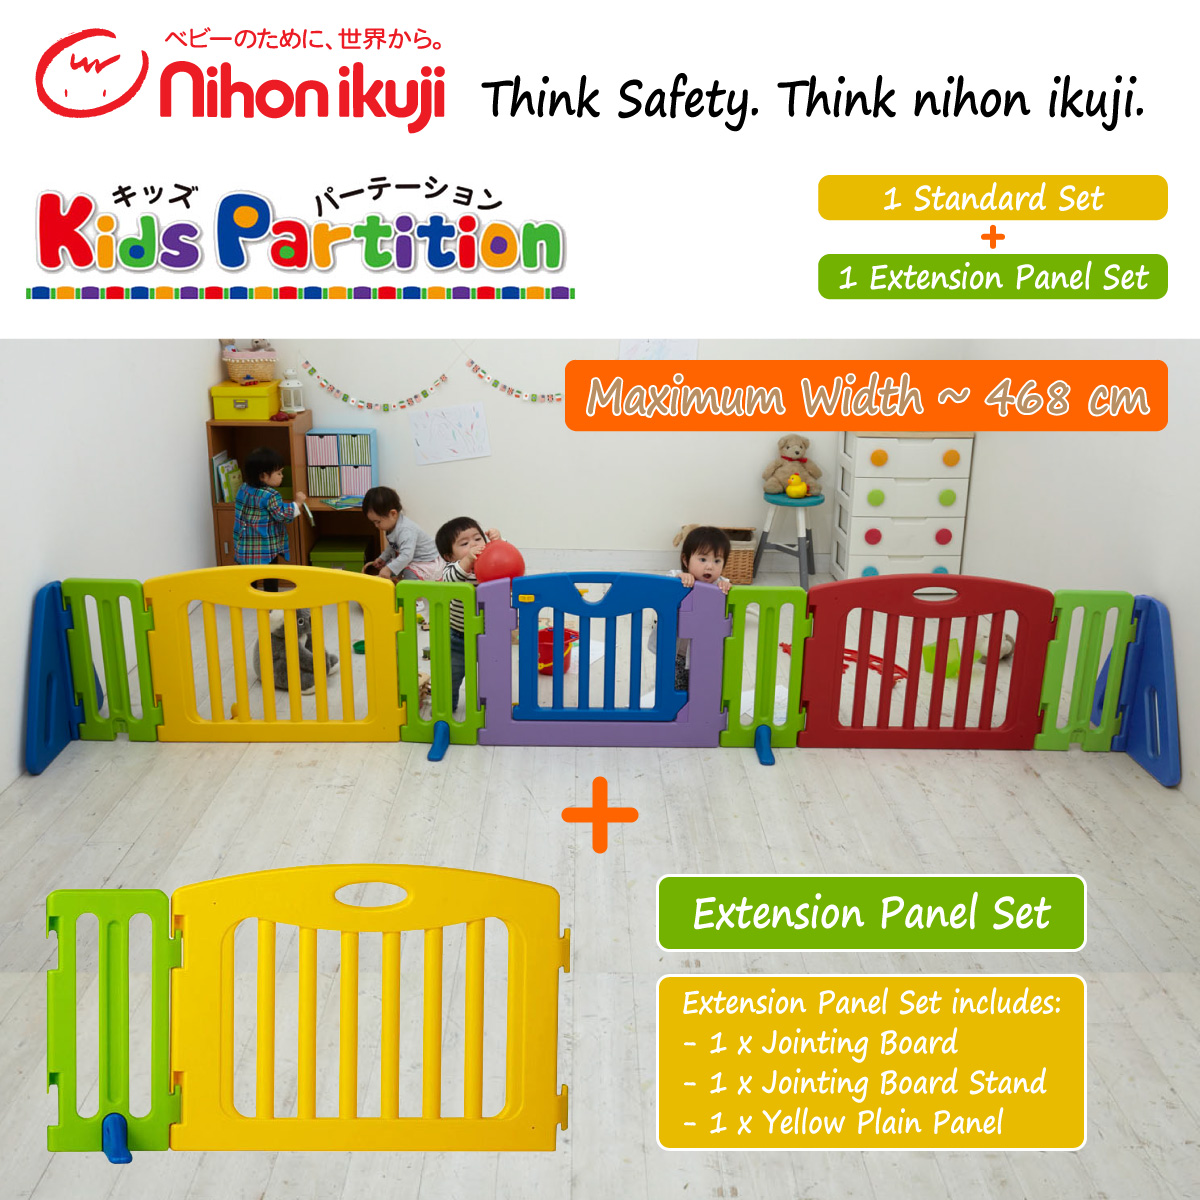 baby-fair nihon ikuji Kids Partition (Maximum Width of 468 cm)